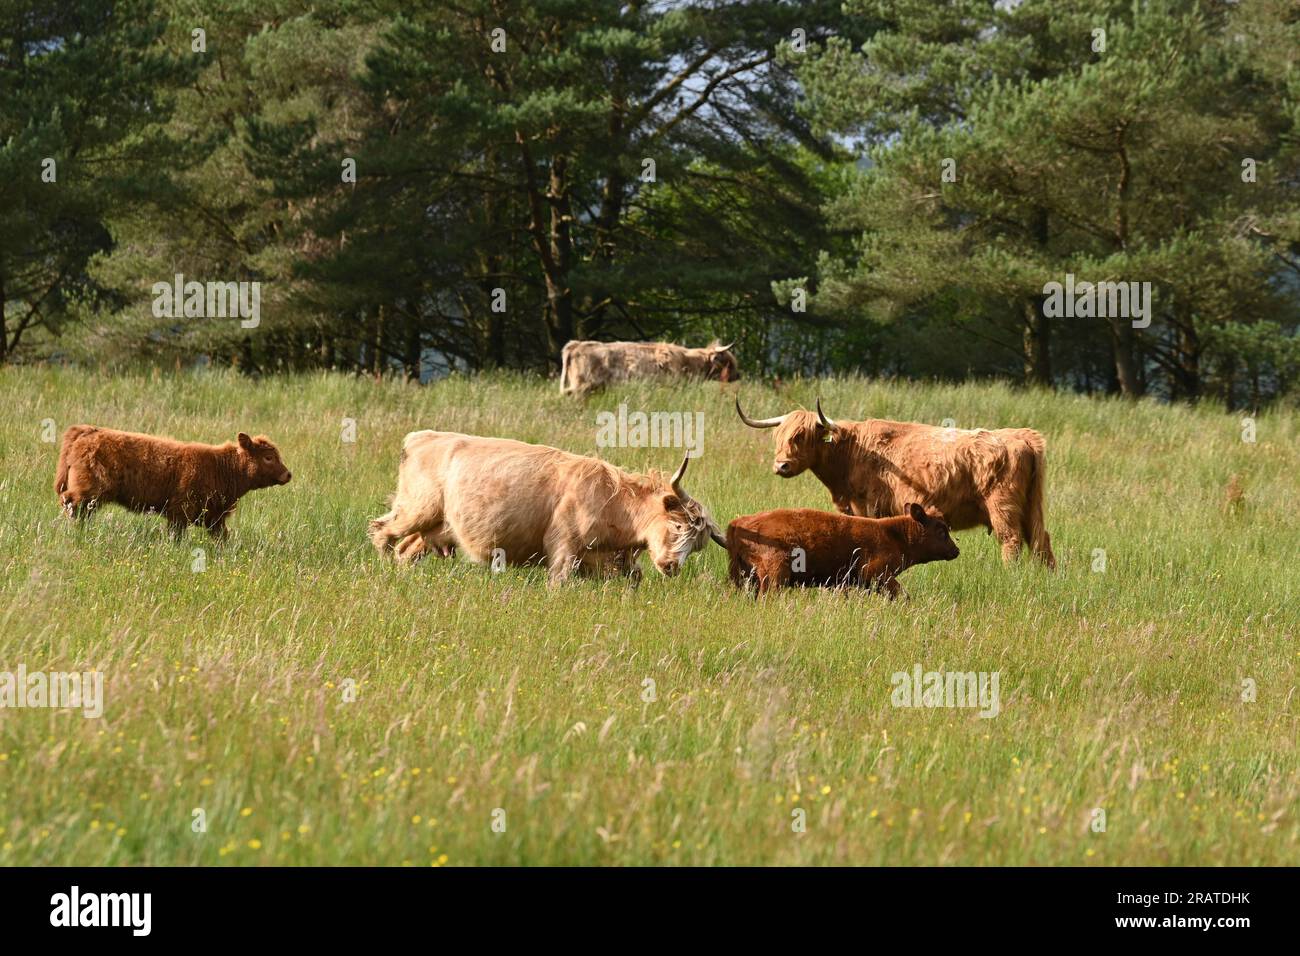 Vache des Highlands attaquant le veau d'une autre vache qui errait trop près - son propre veau marche derrière elle - Écosse, Royaume-Uni Banque D'Images